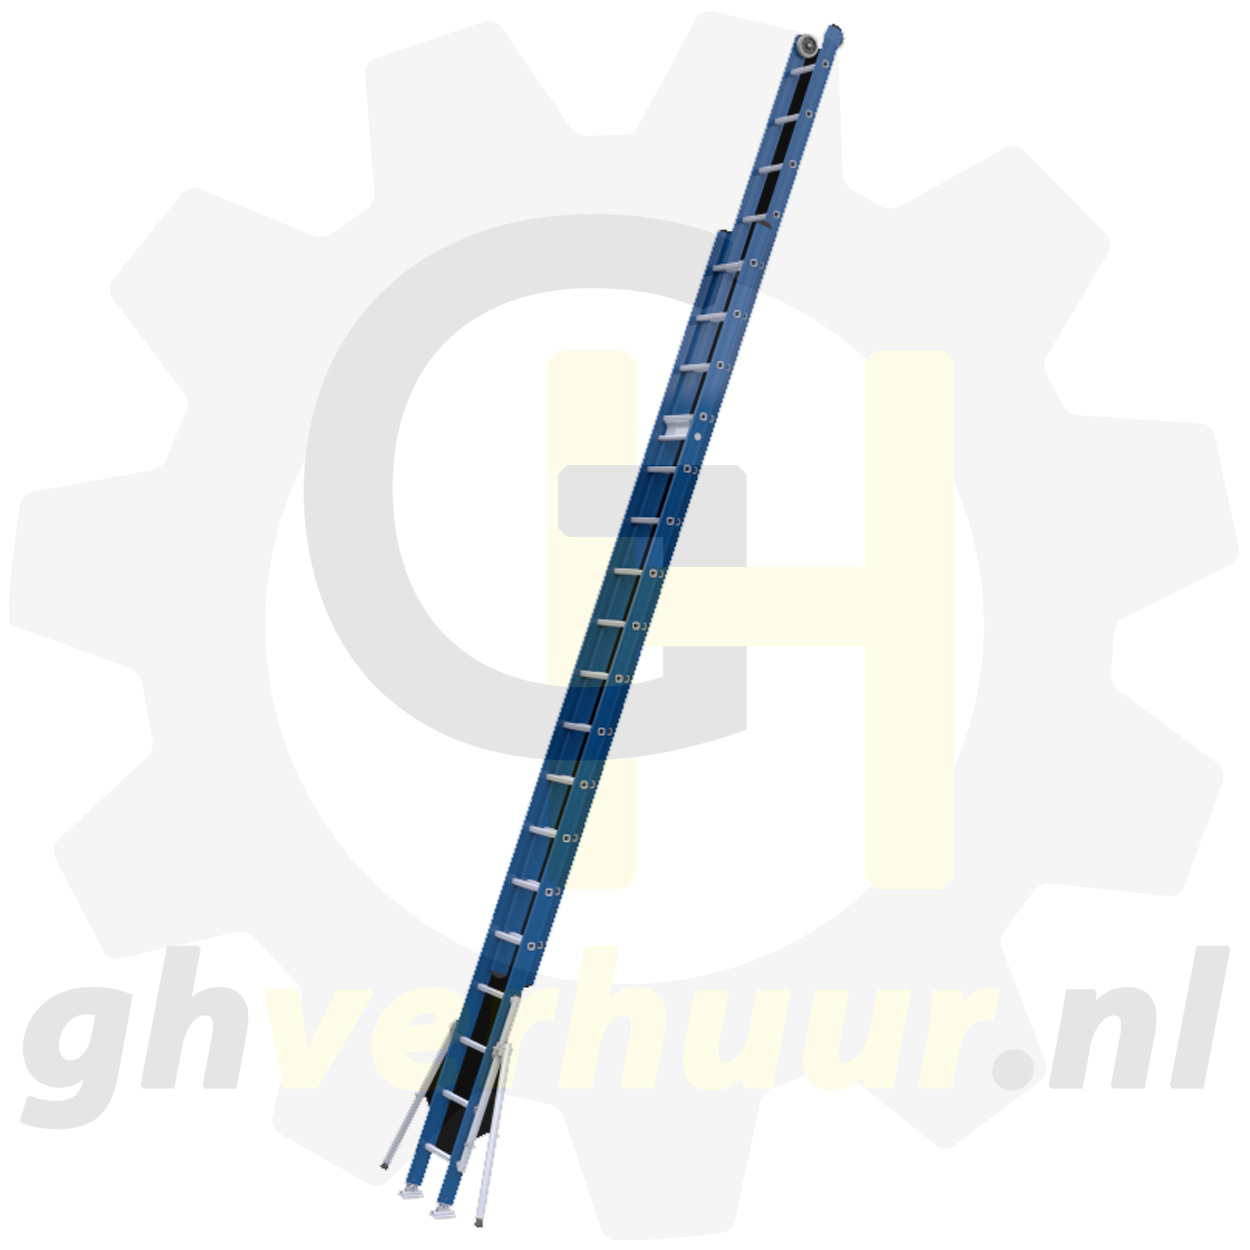 www.ghverhuur.nl ghverhuur gh verhuur ladder huren professioneel gereedschap